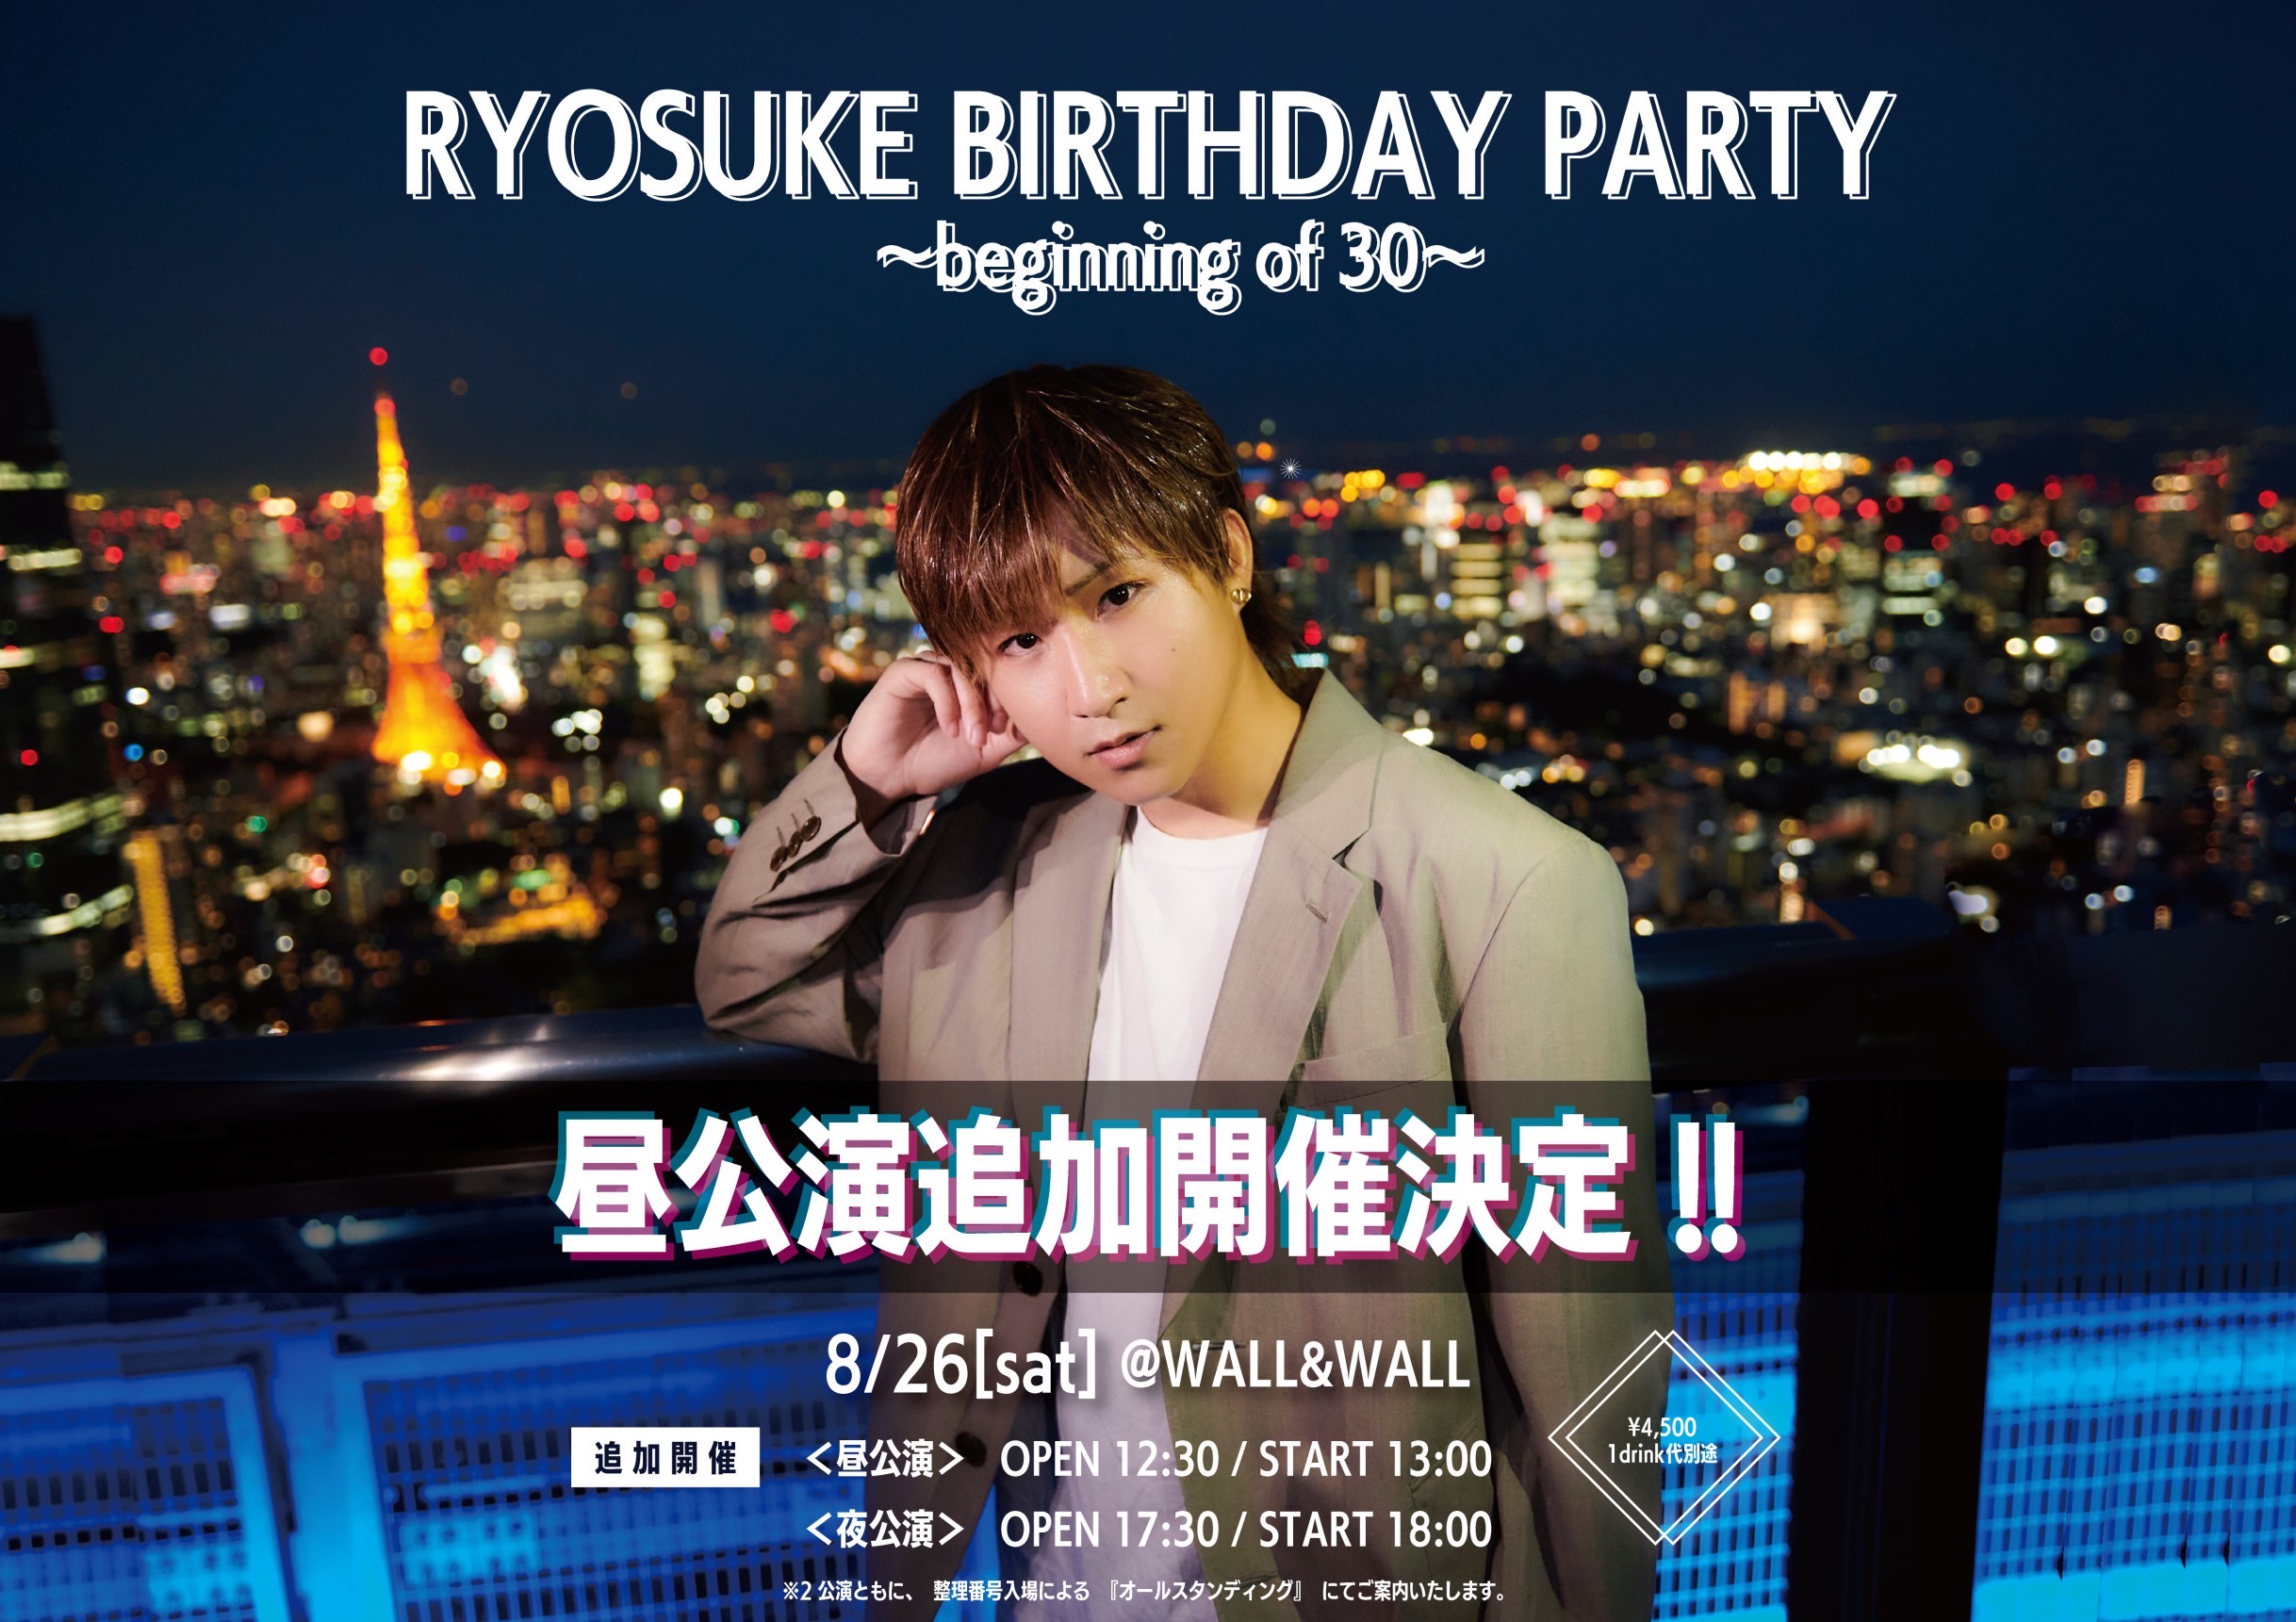 【NEWS】8/26(土)綾介生誕「RYOSUKE BIRTHDAY PARTY~30 の始まり~」 追加昼公演の開催決定!